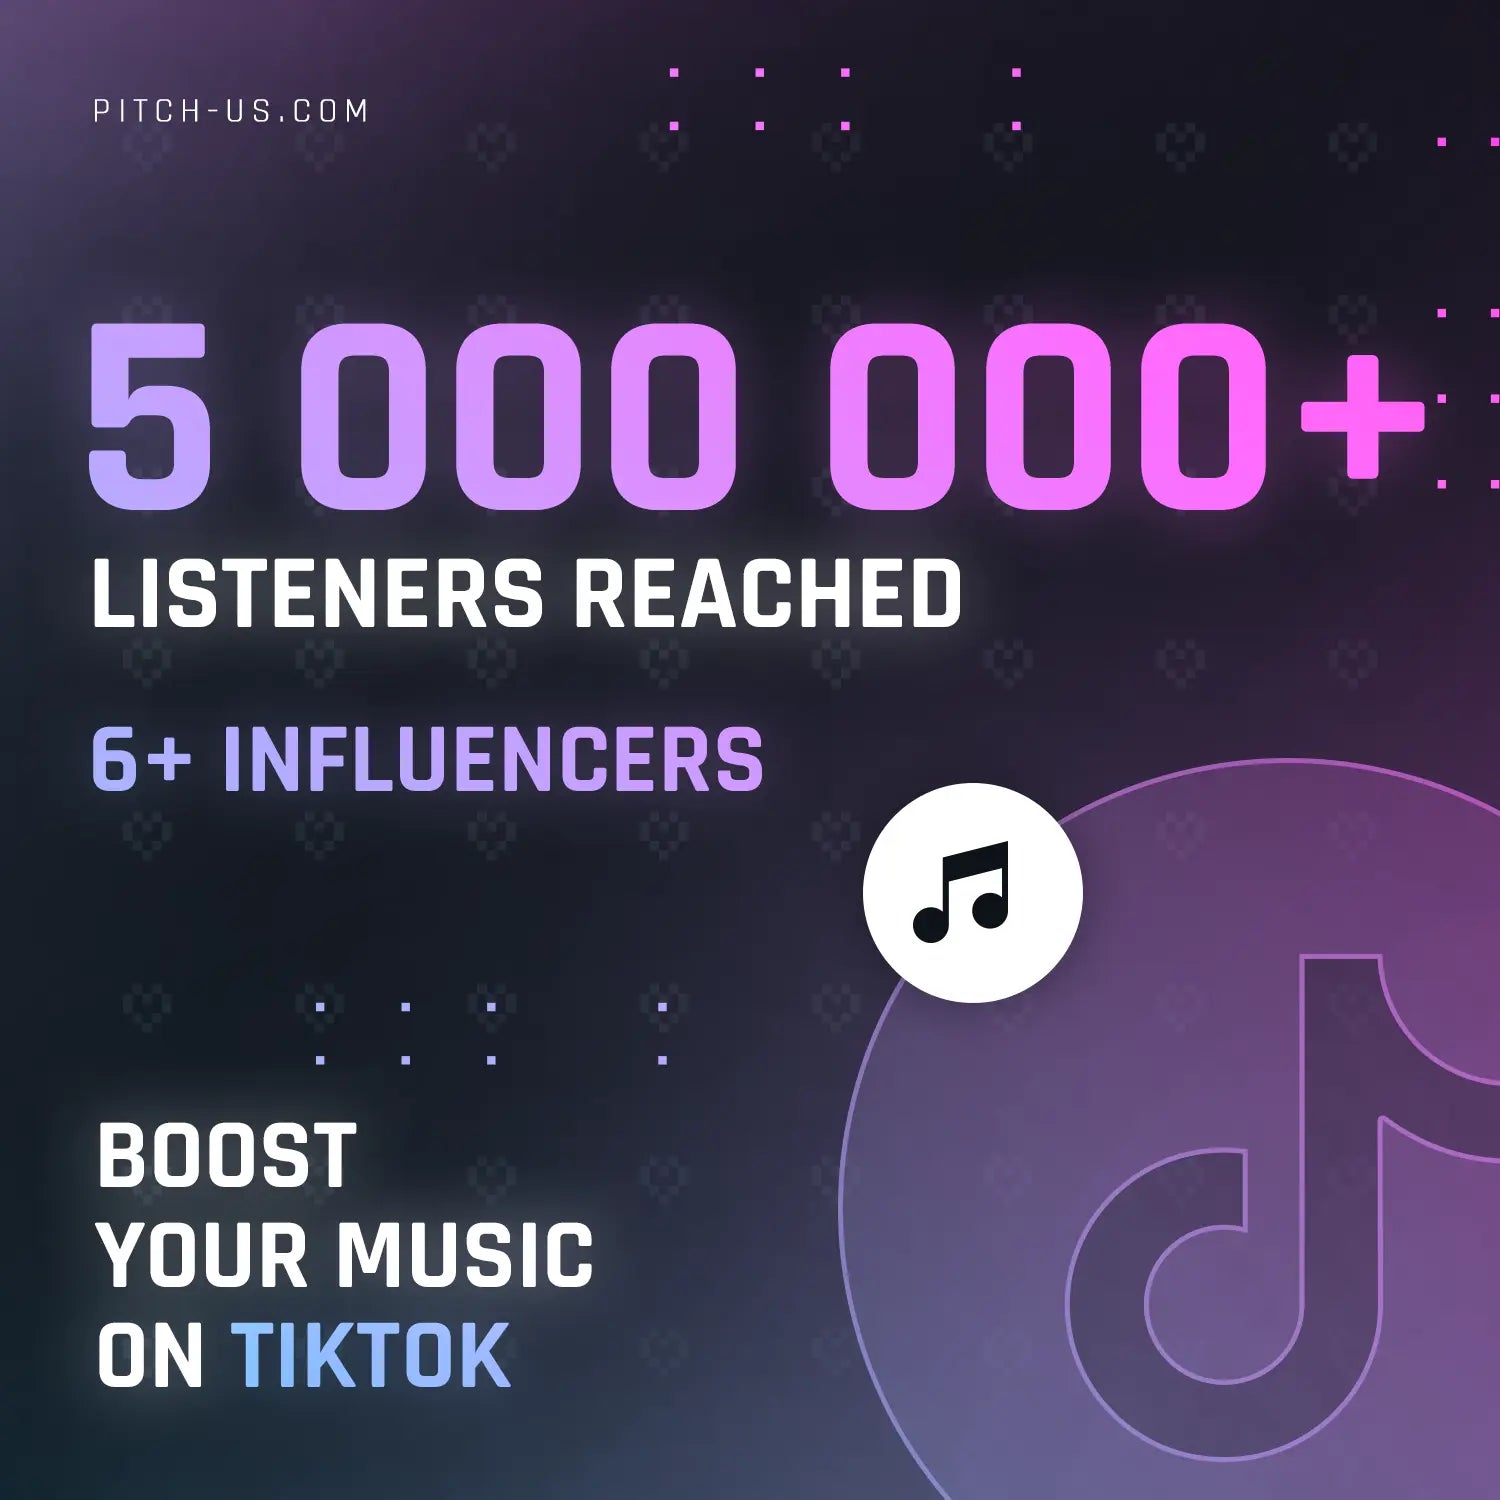 TikTok Tailored (5,000,000+ Listeners) Pitch-Us